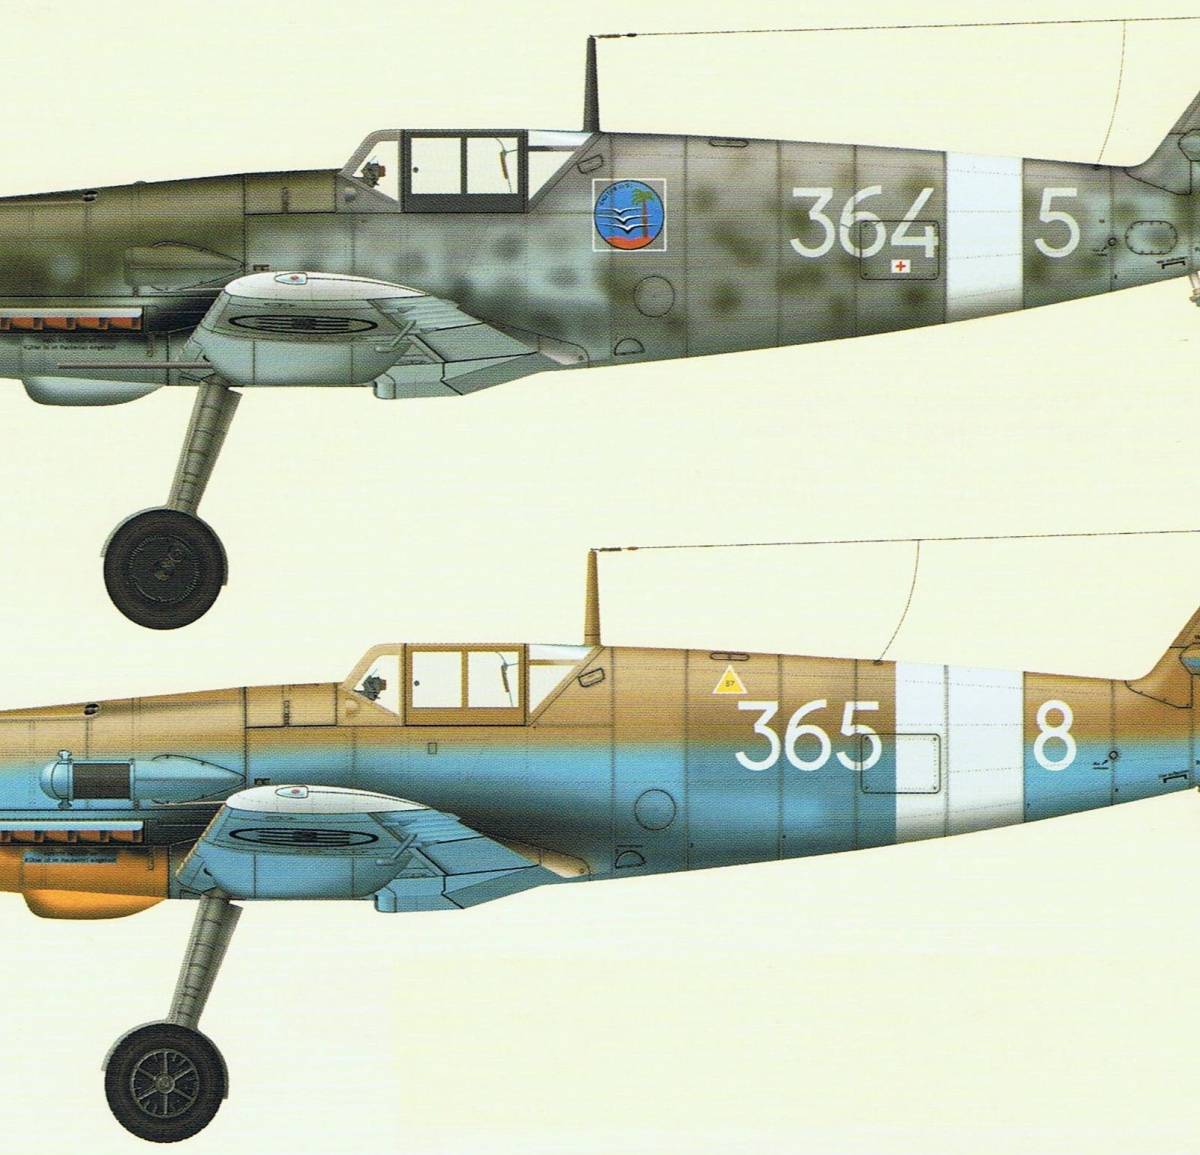 Трофейные истребители Messerschmitt Me 109. Часть 19